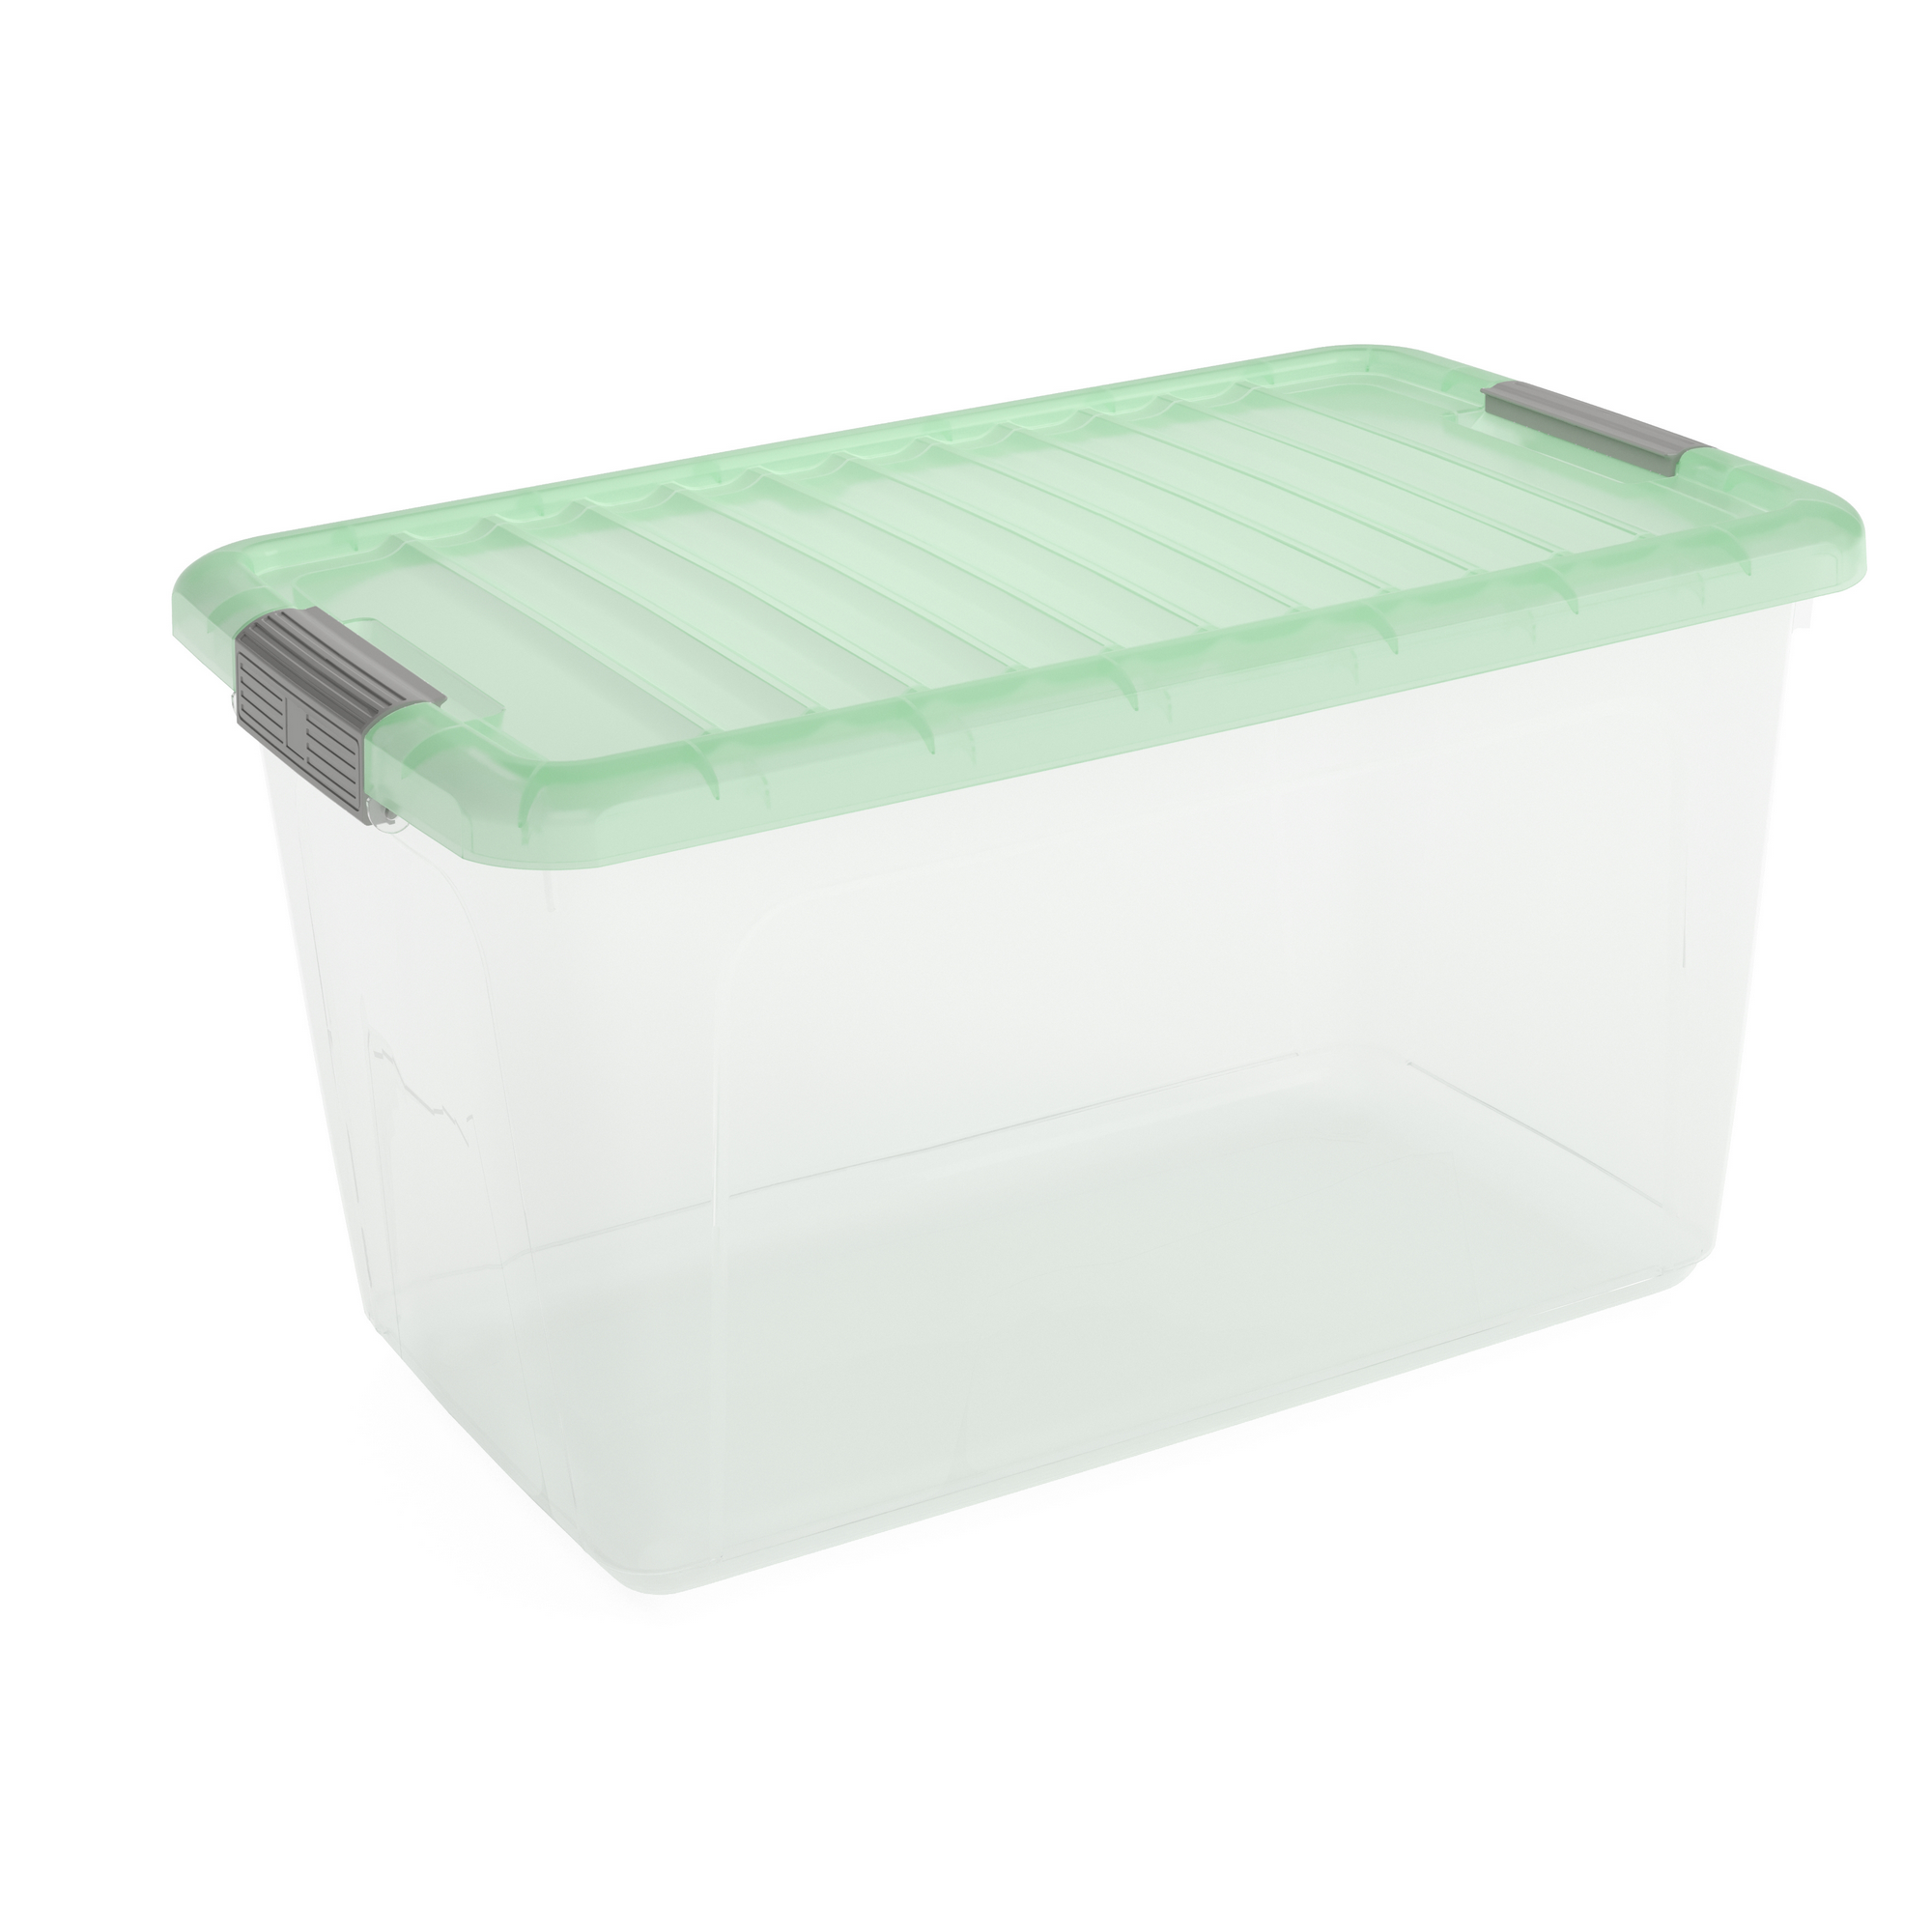 Aufbewahrung 'W Box' L Trend Transparent/Neo Mint 50 l 56,5 x 39 x 31,5 cm + product picture